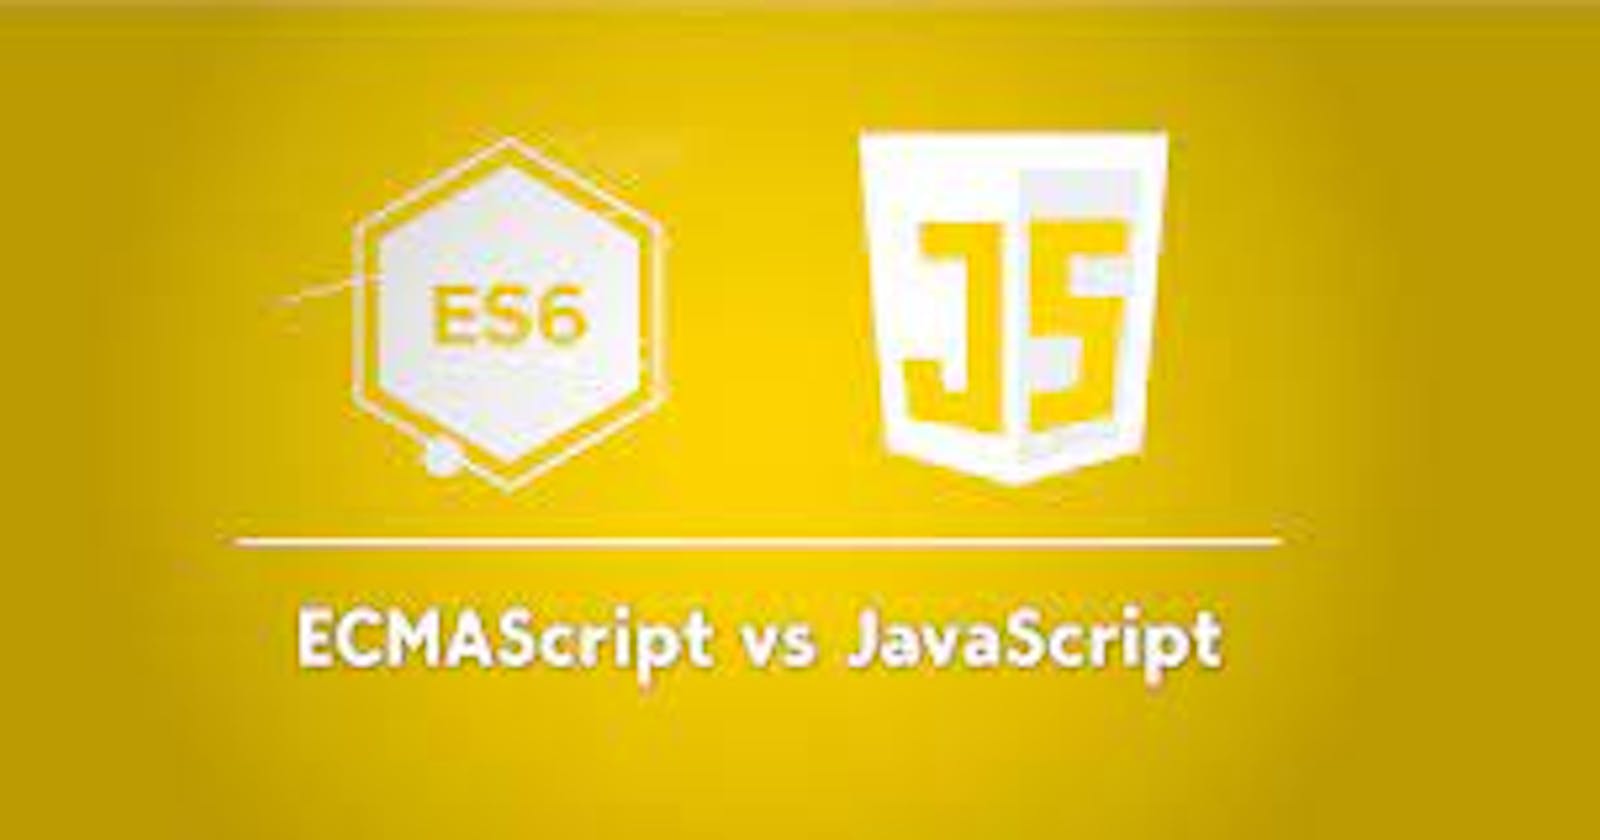 History of JavaScript and EcmaScript.